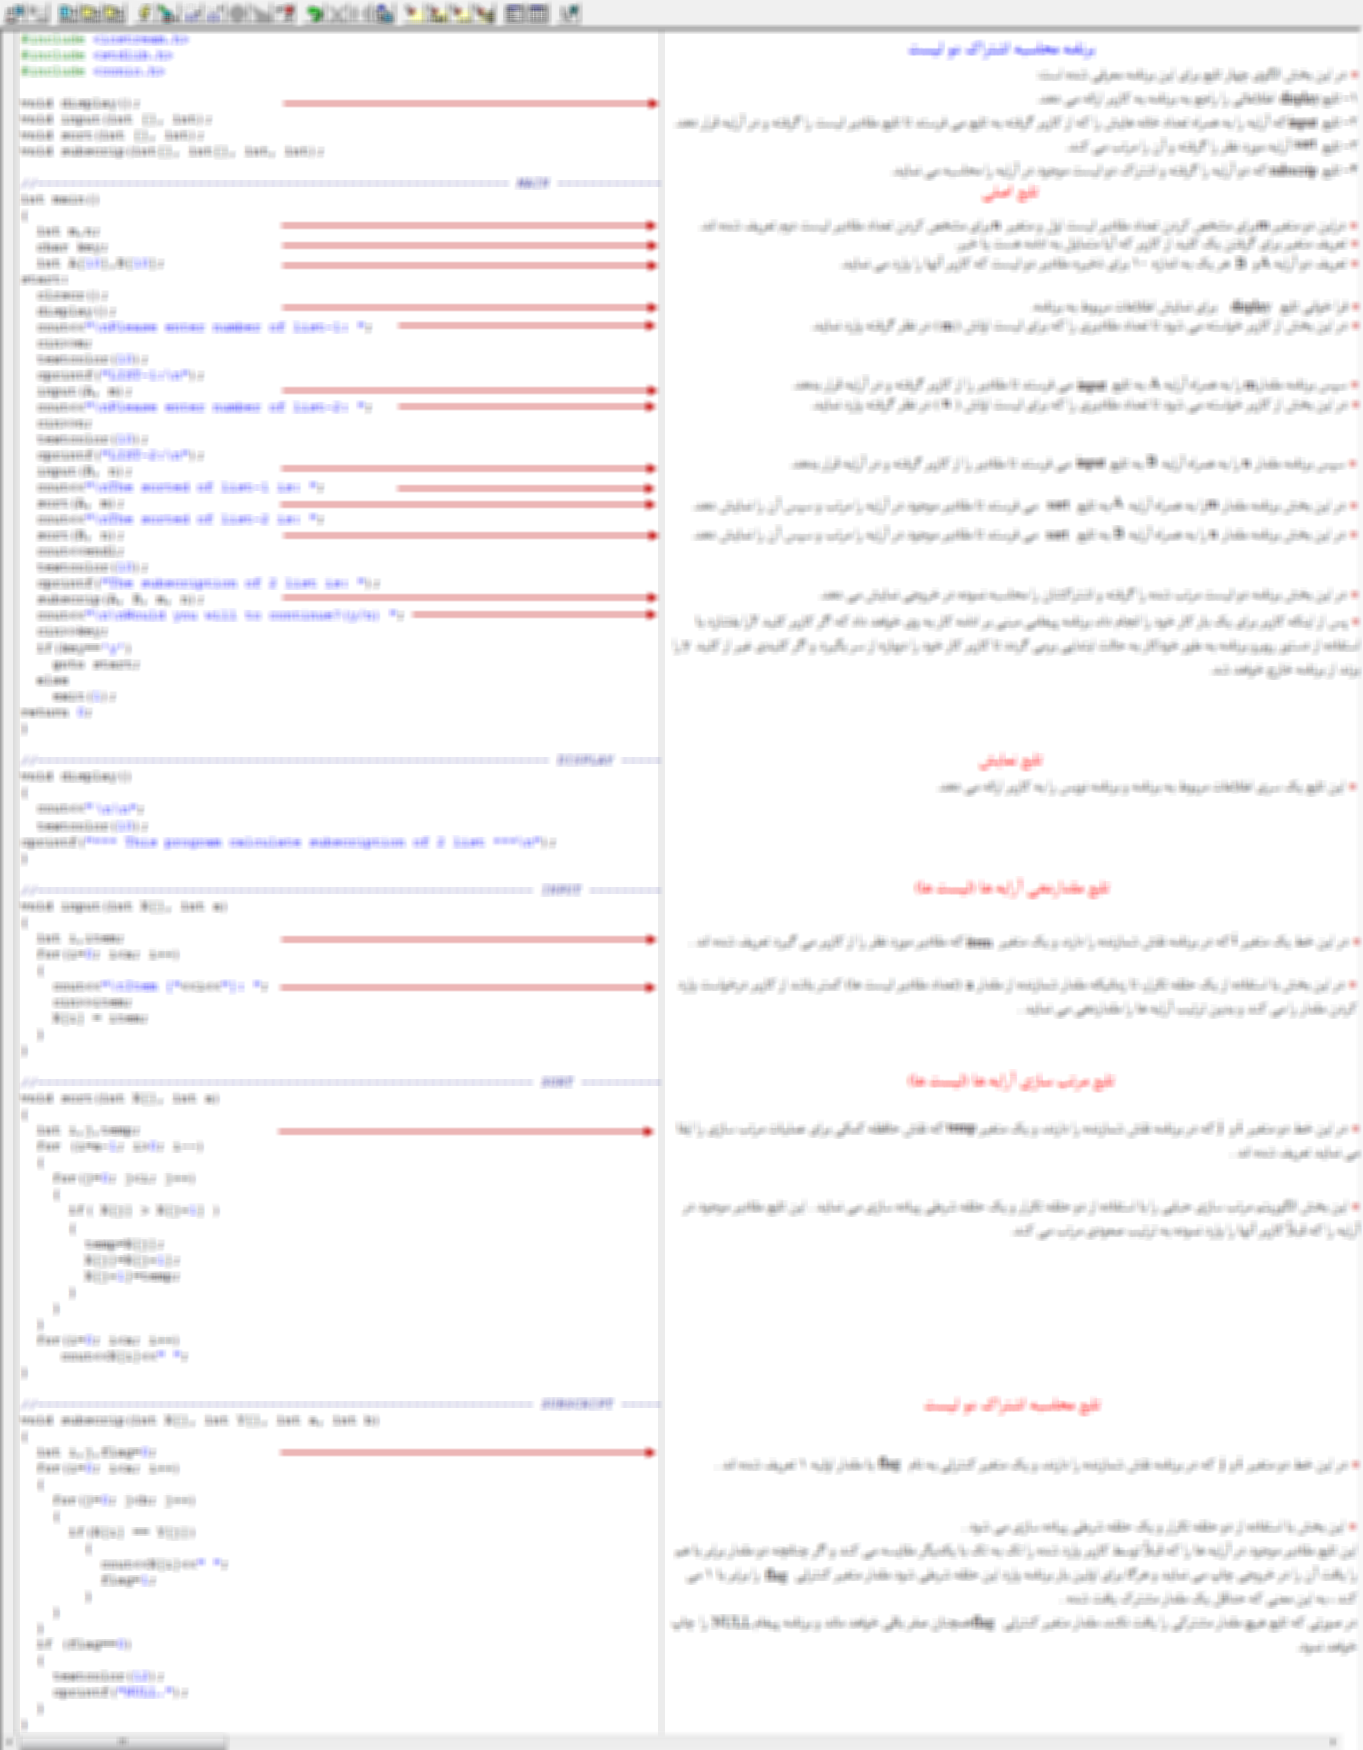 سورس برنامه محاسبه اشتراک دو مجموعه لیست به زبان C++